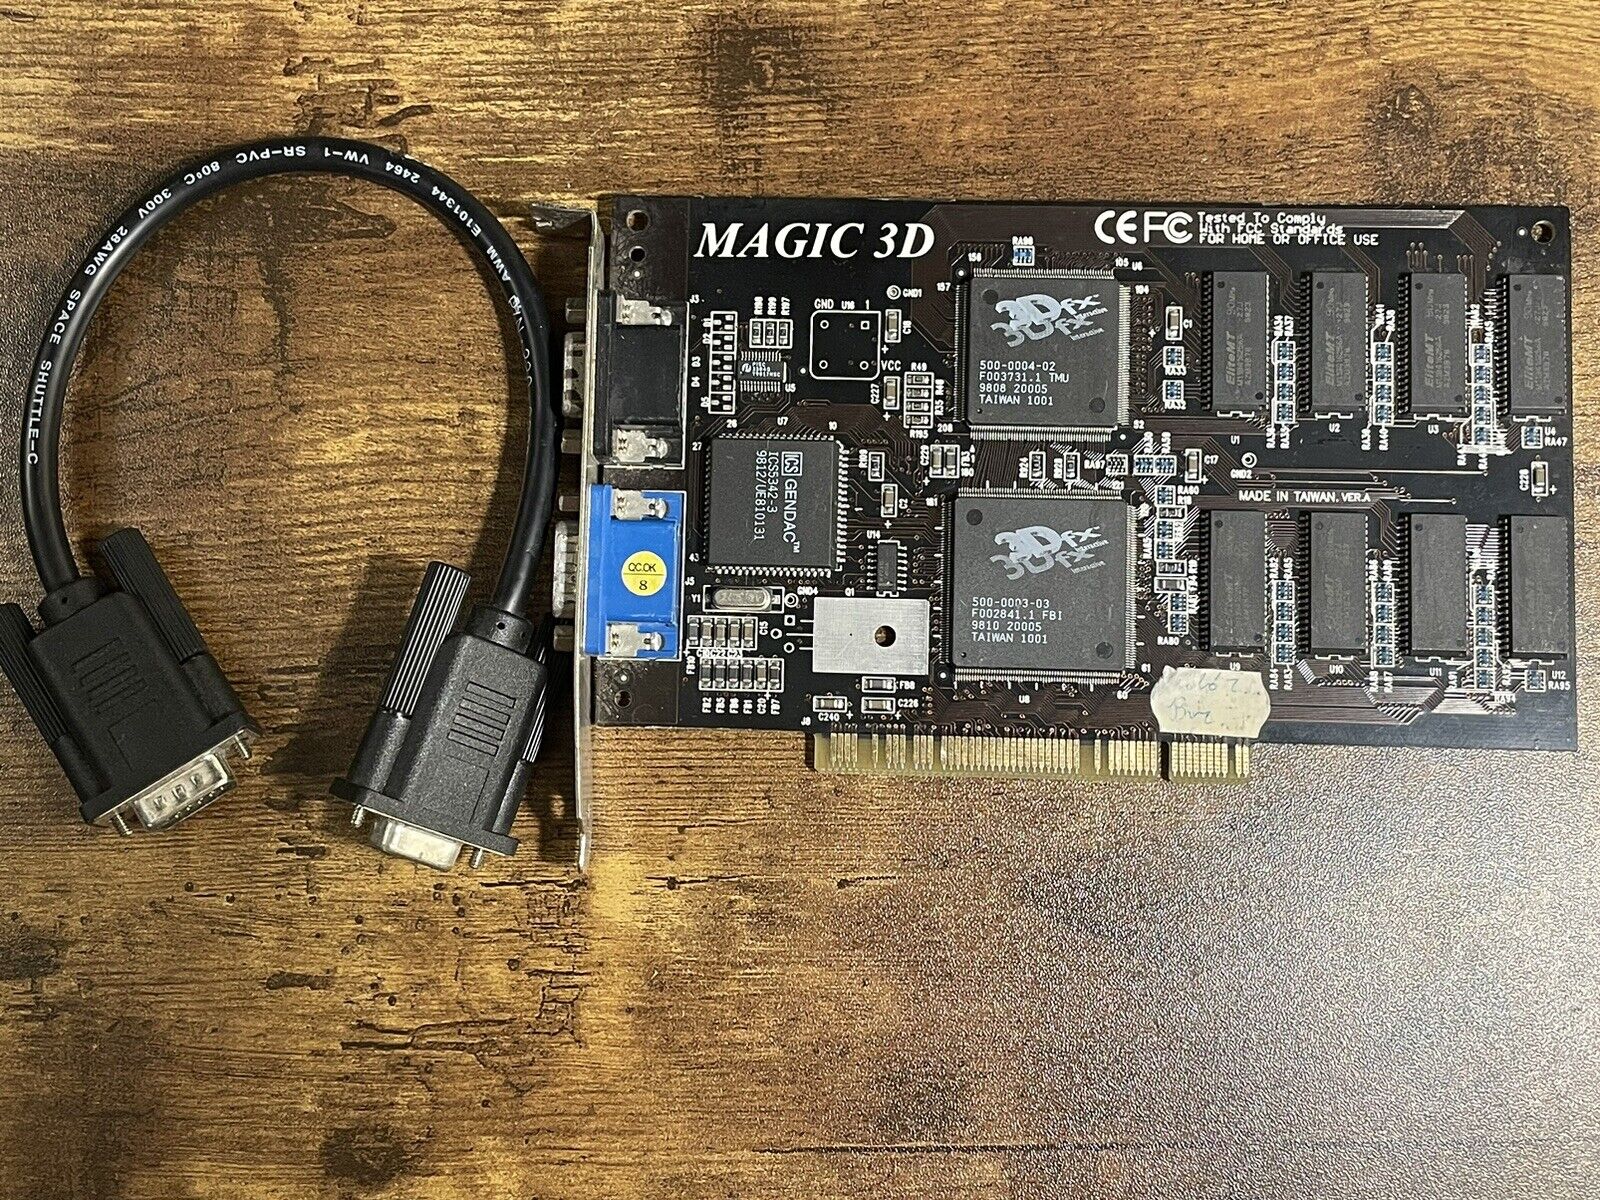 Magic 3D Voodoo 4MB PCI 3dfx rare black pcb vintage dos gaming